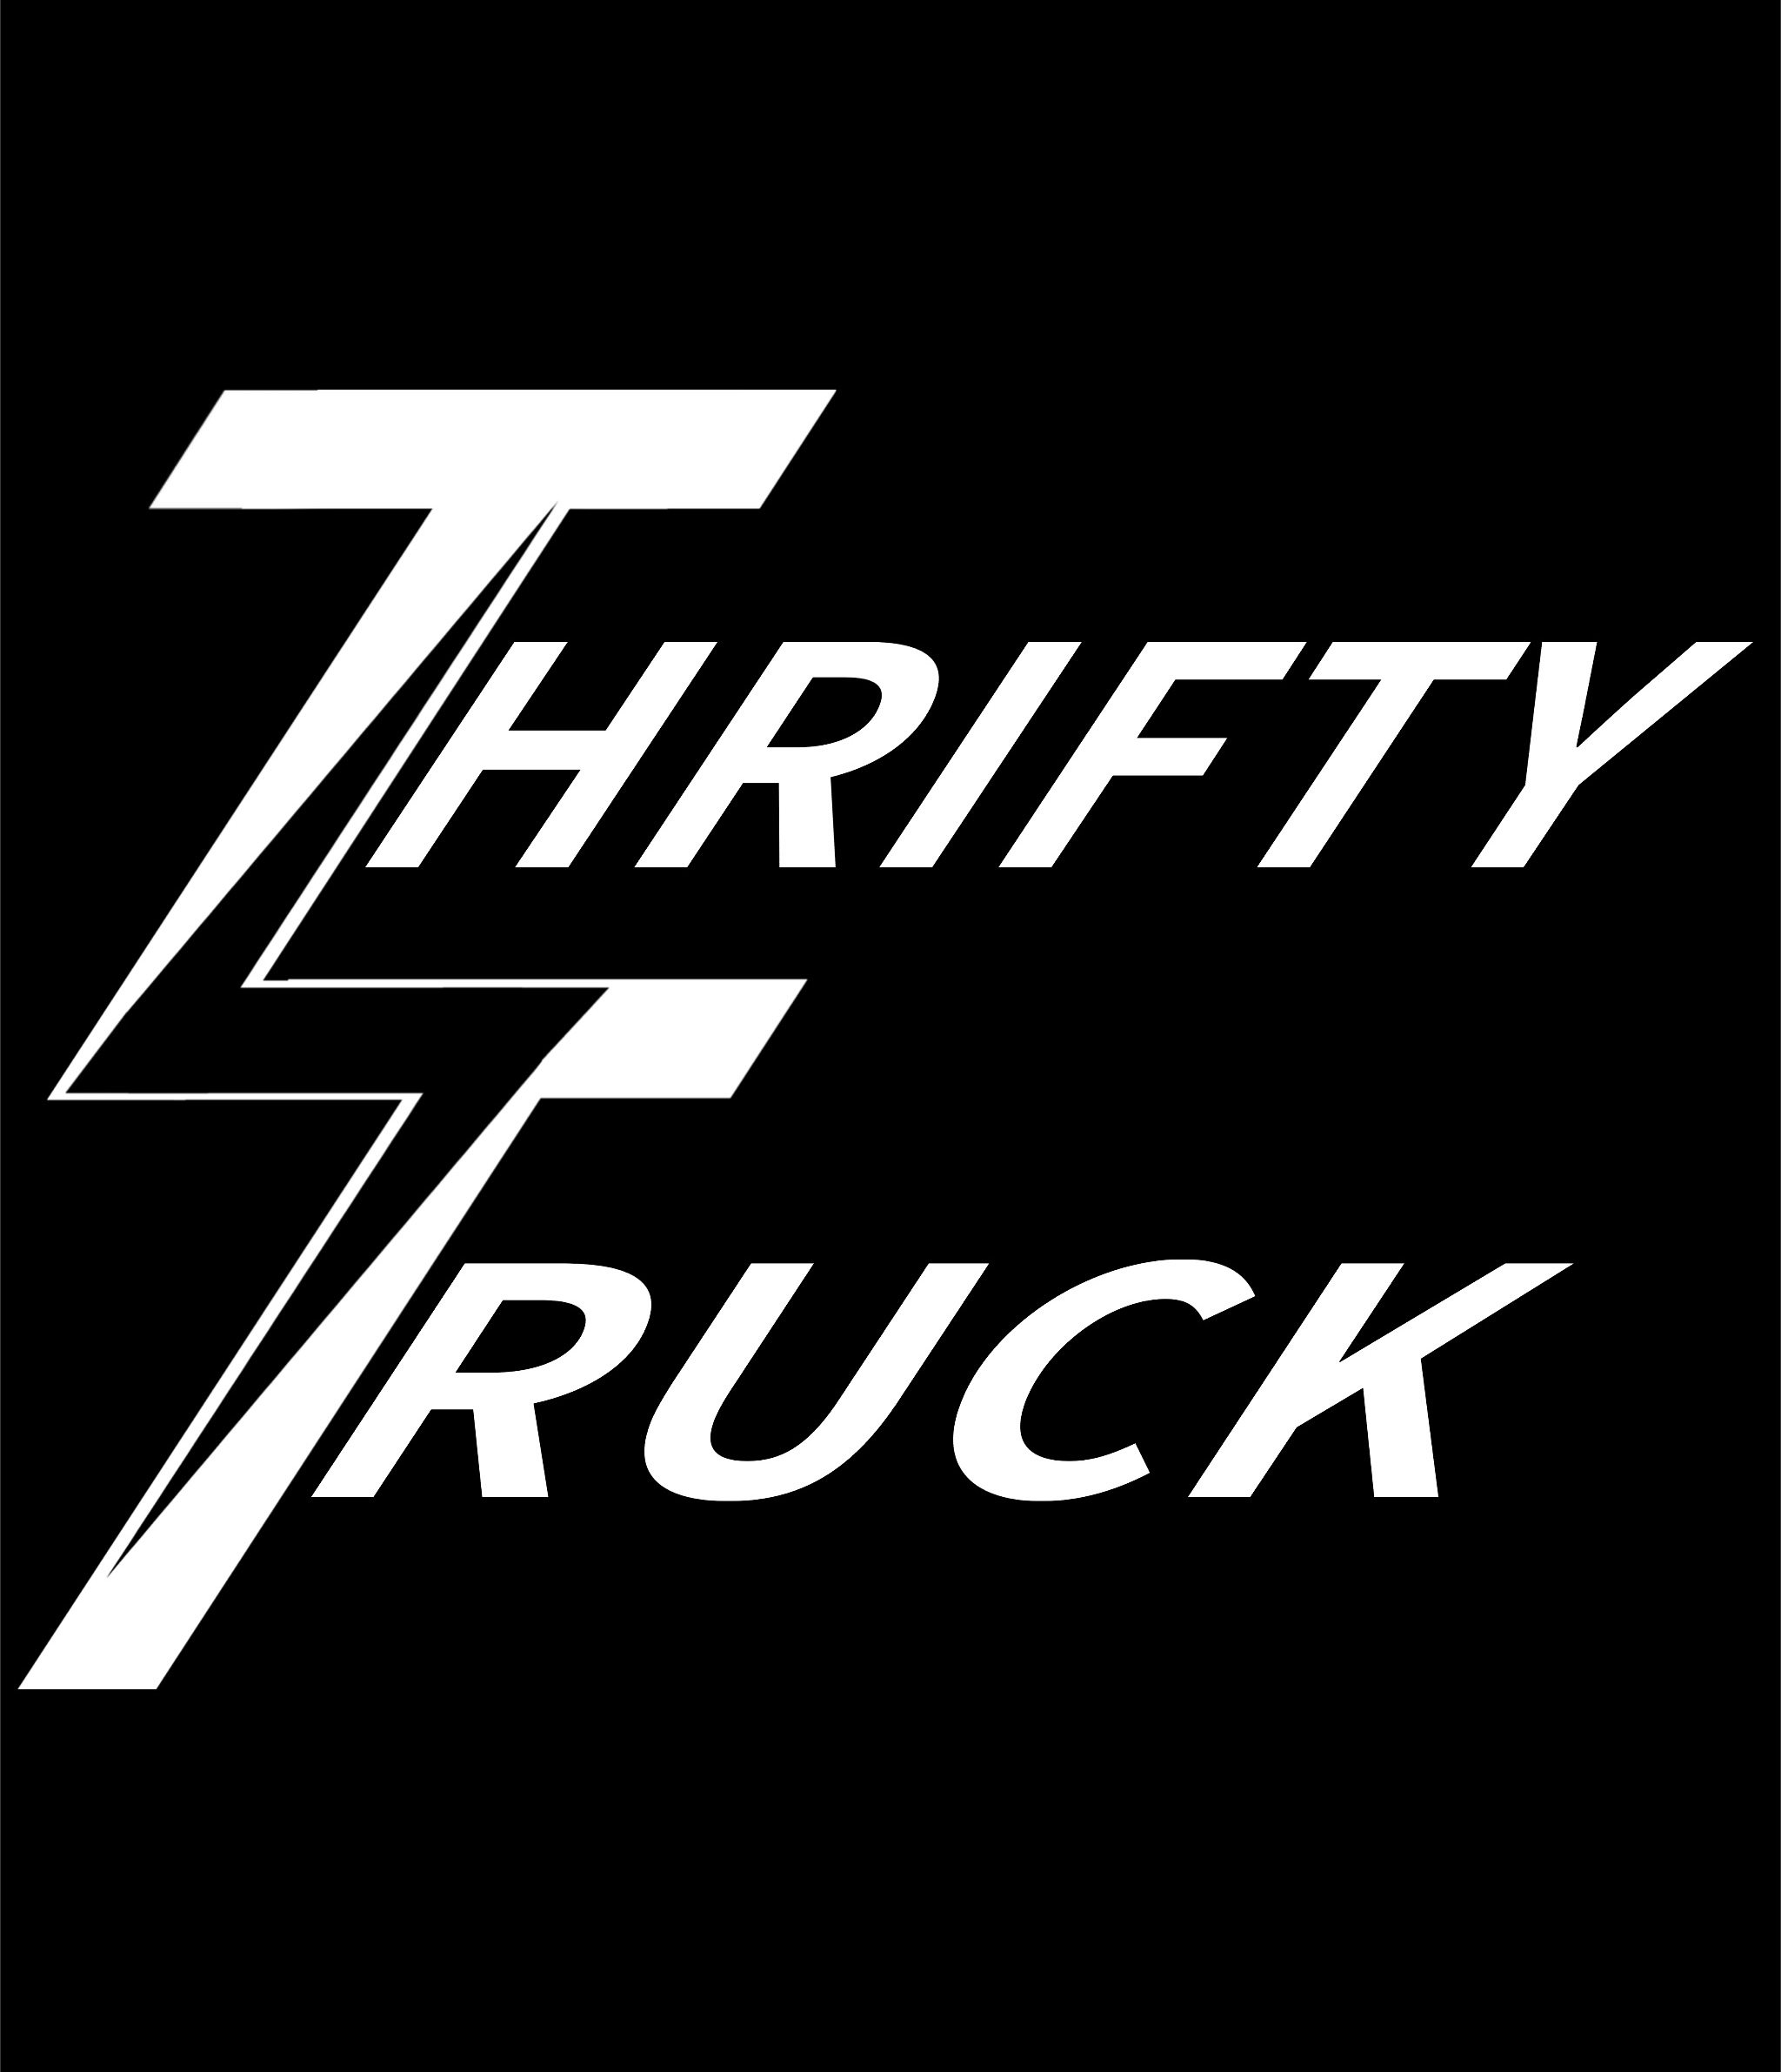 Thrifty Truck